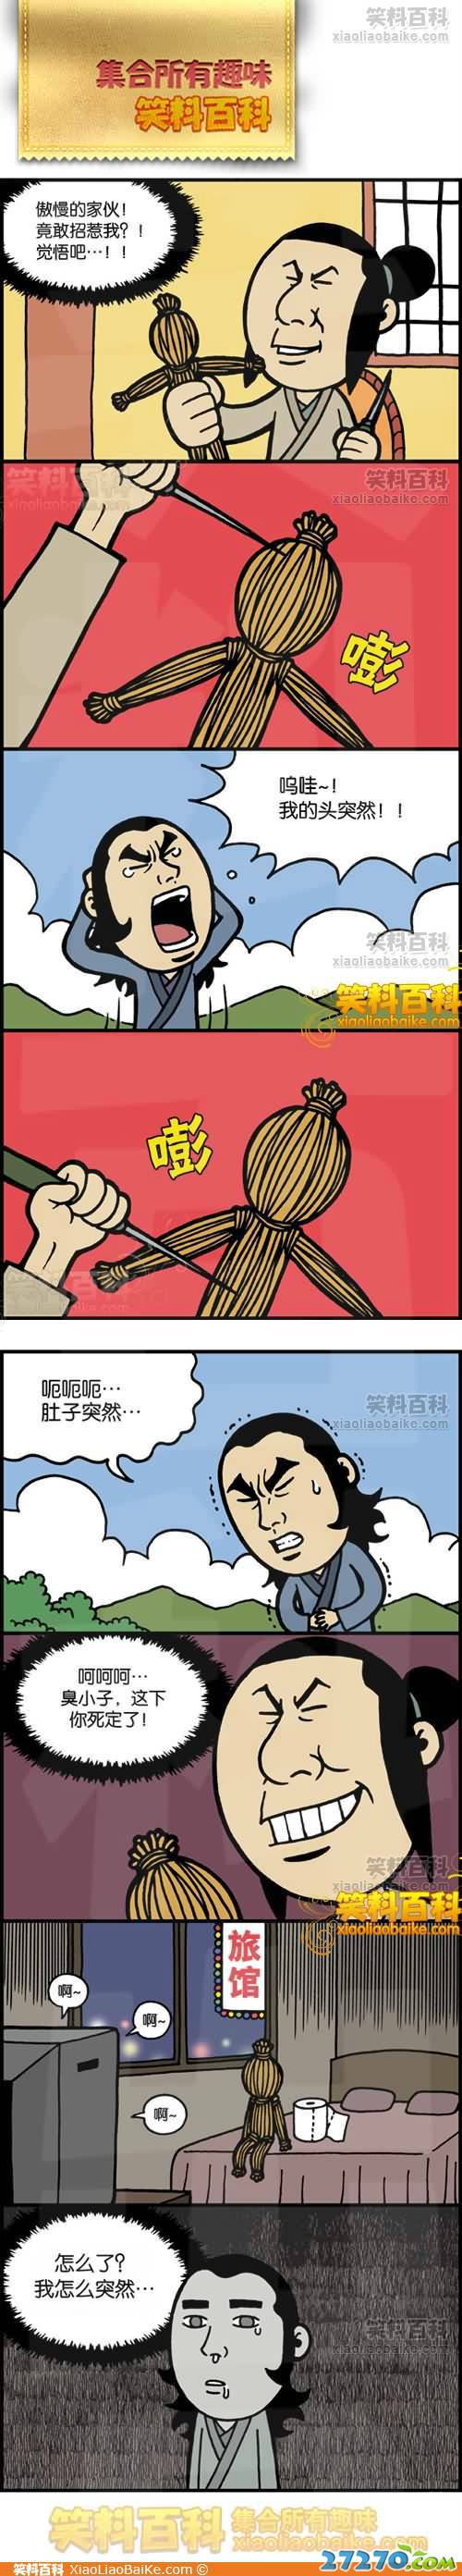 邪恶漫画爆笑囧图第240刊：至少有理由